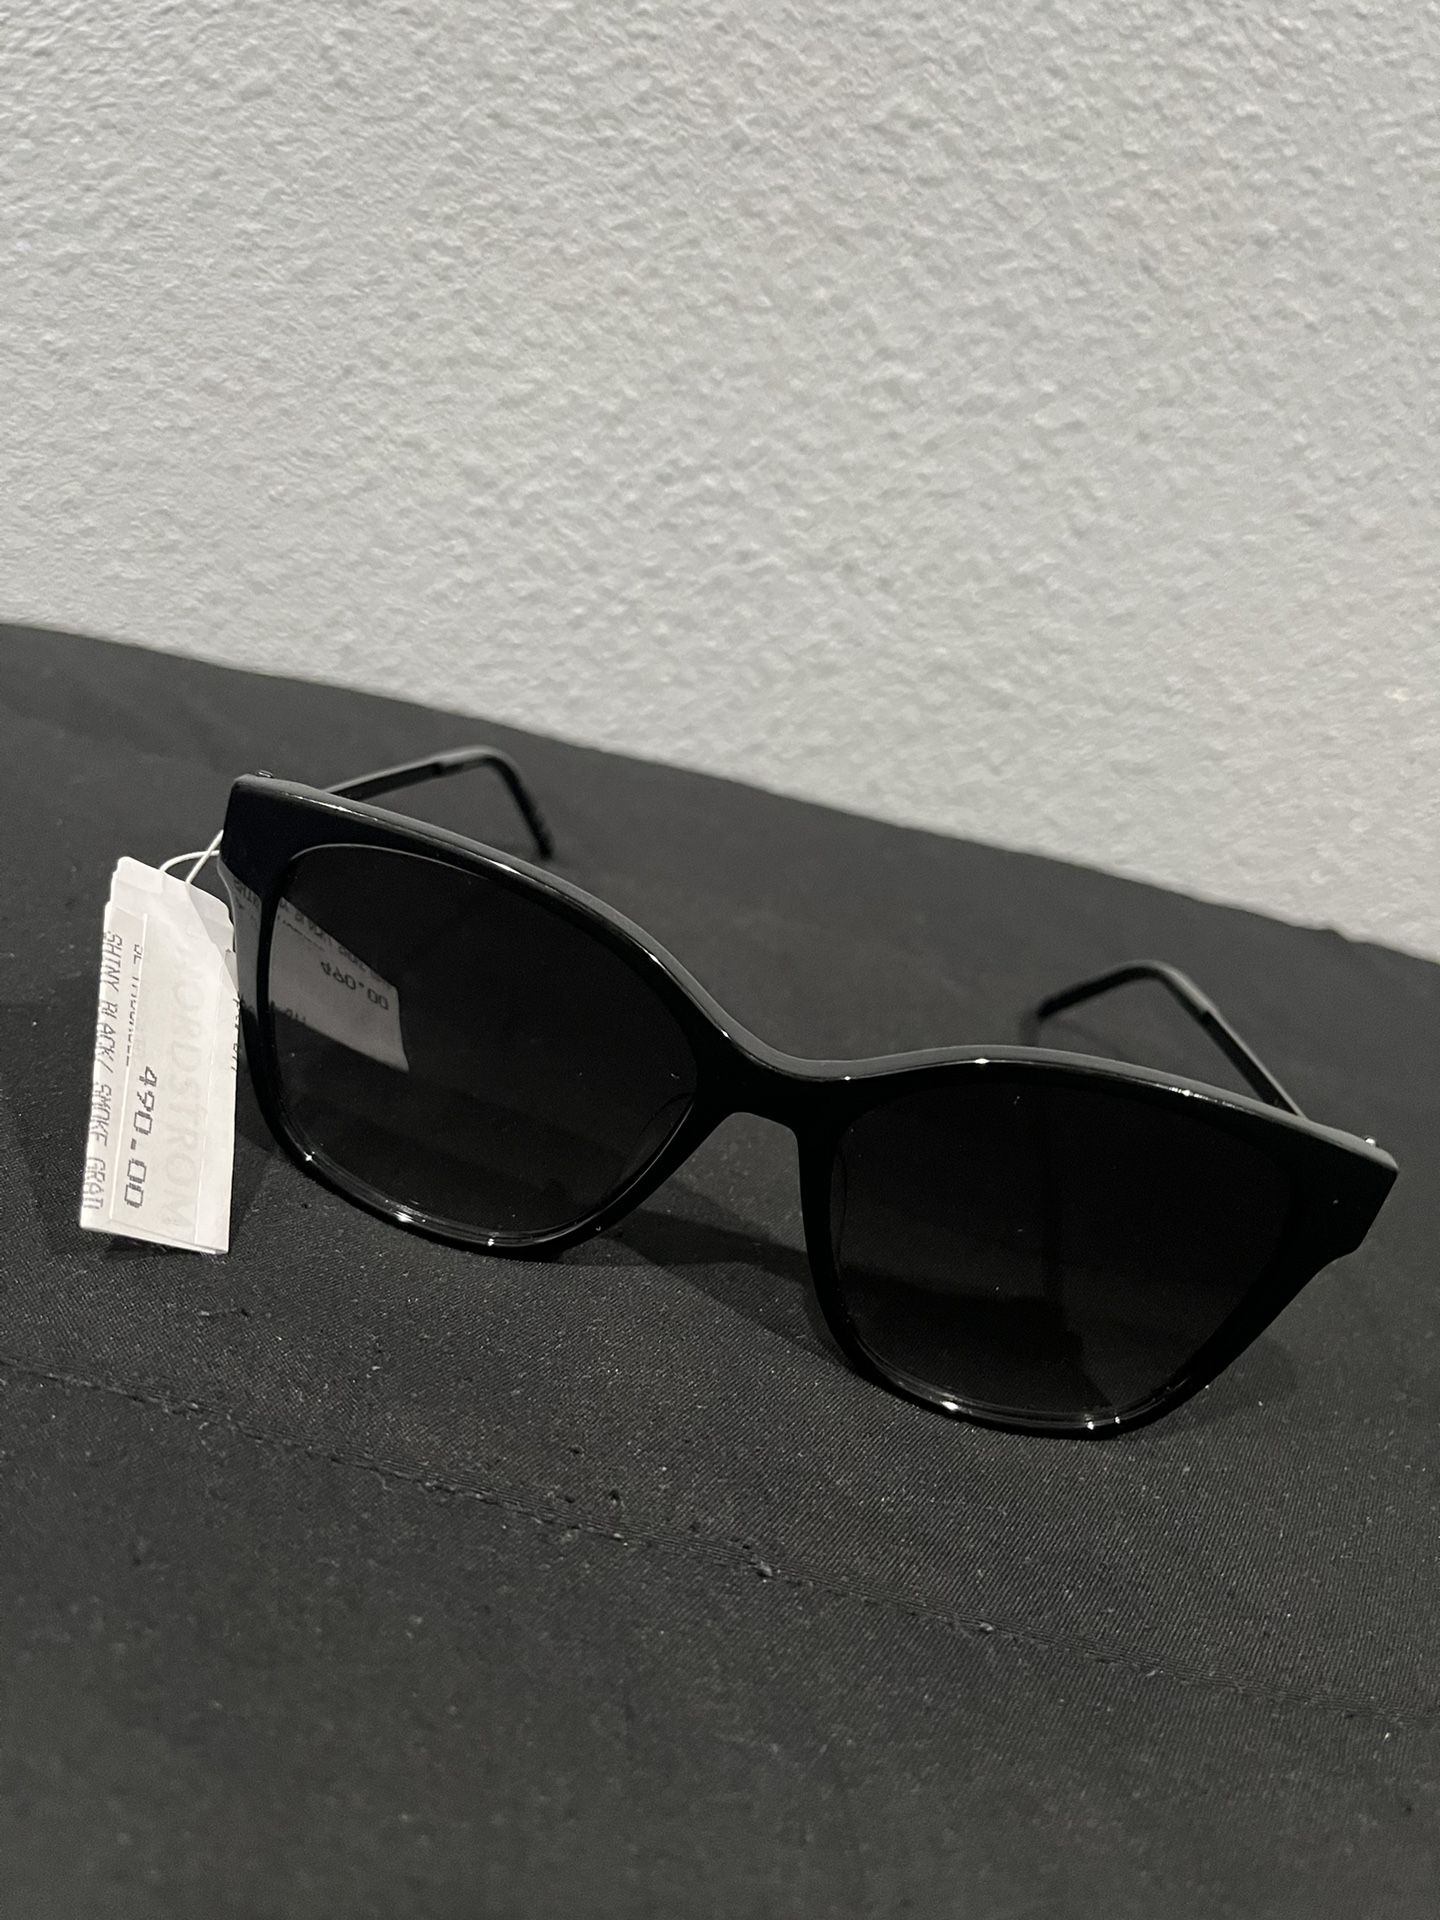 Yves Saint Laurent Women’s Sun Glasses